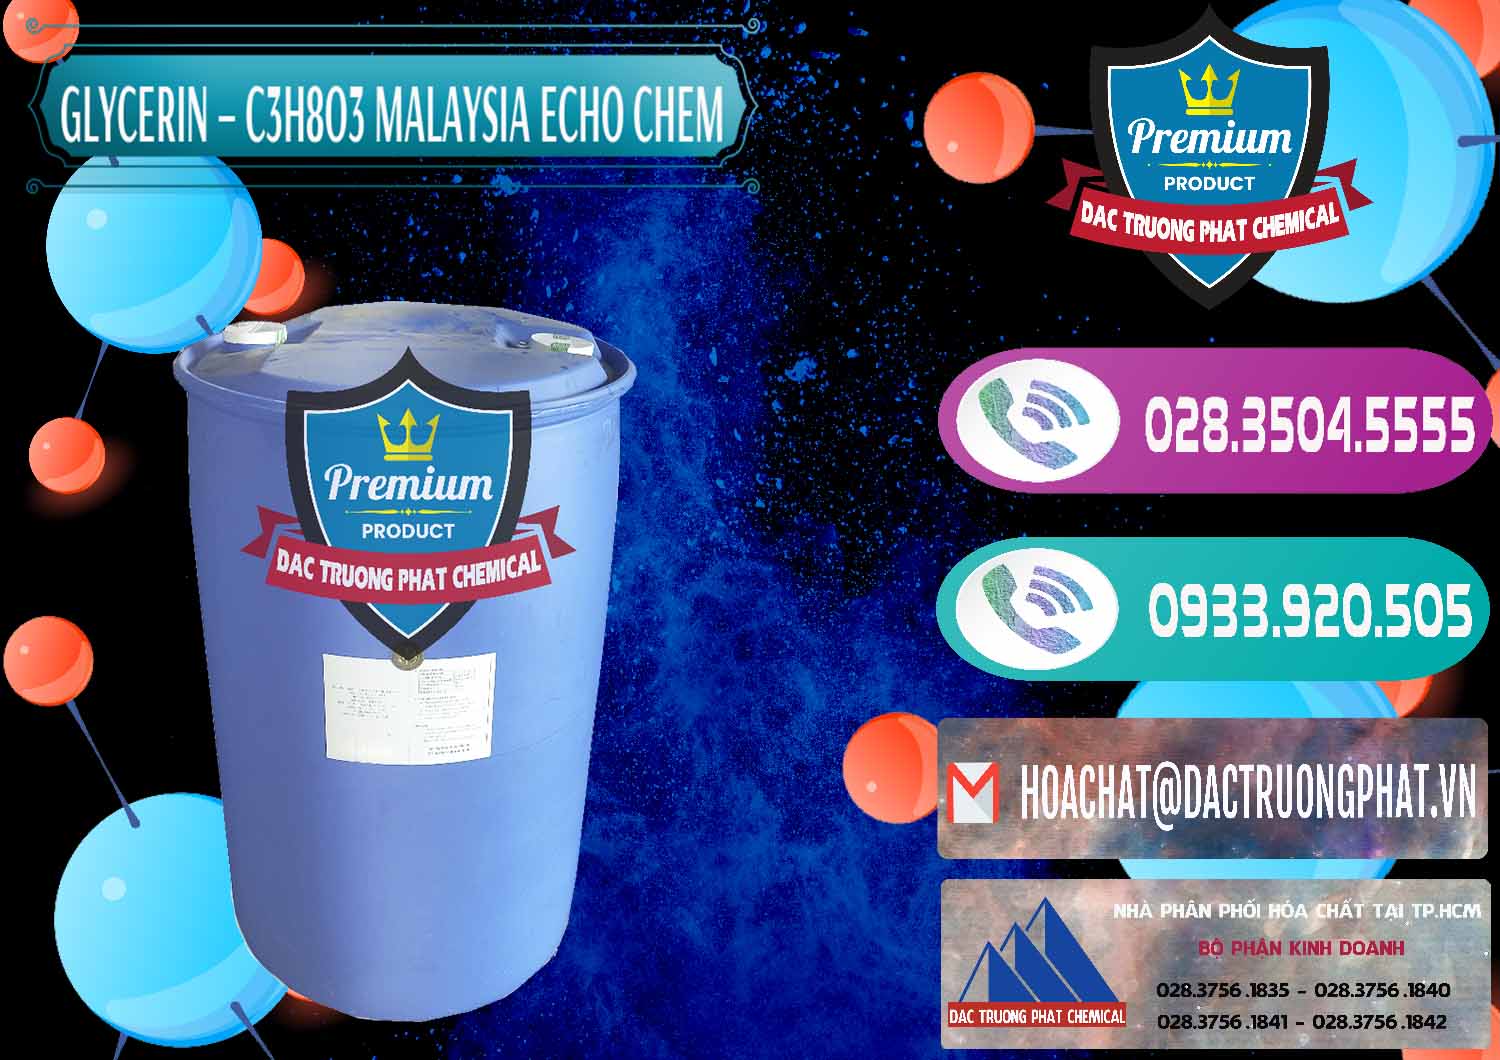 Bán _ cung ứng Glycerin – C3H8O3 99.7% Echo Chem Malaysia - 0273 - Nơi chuyên cung cấp _ bán hóa chất tại TP.HCM - hoachatxulynuoc.com